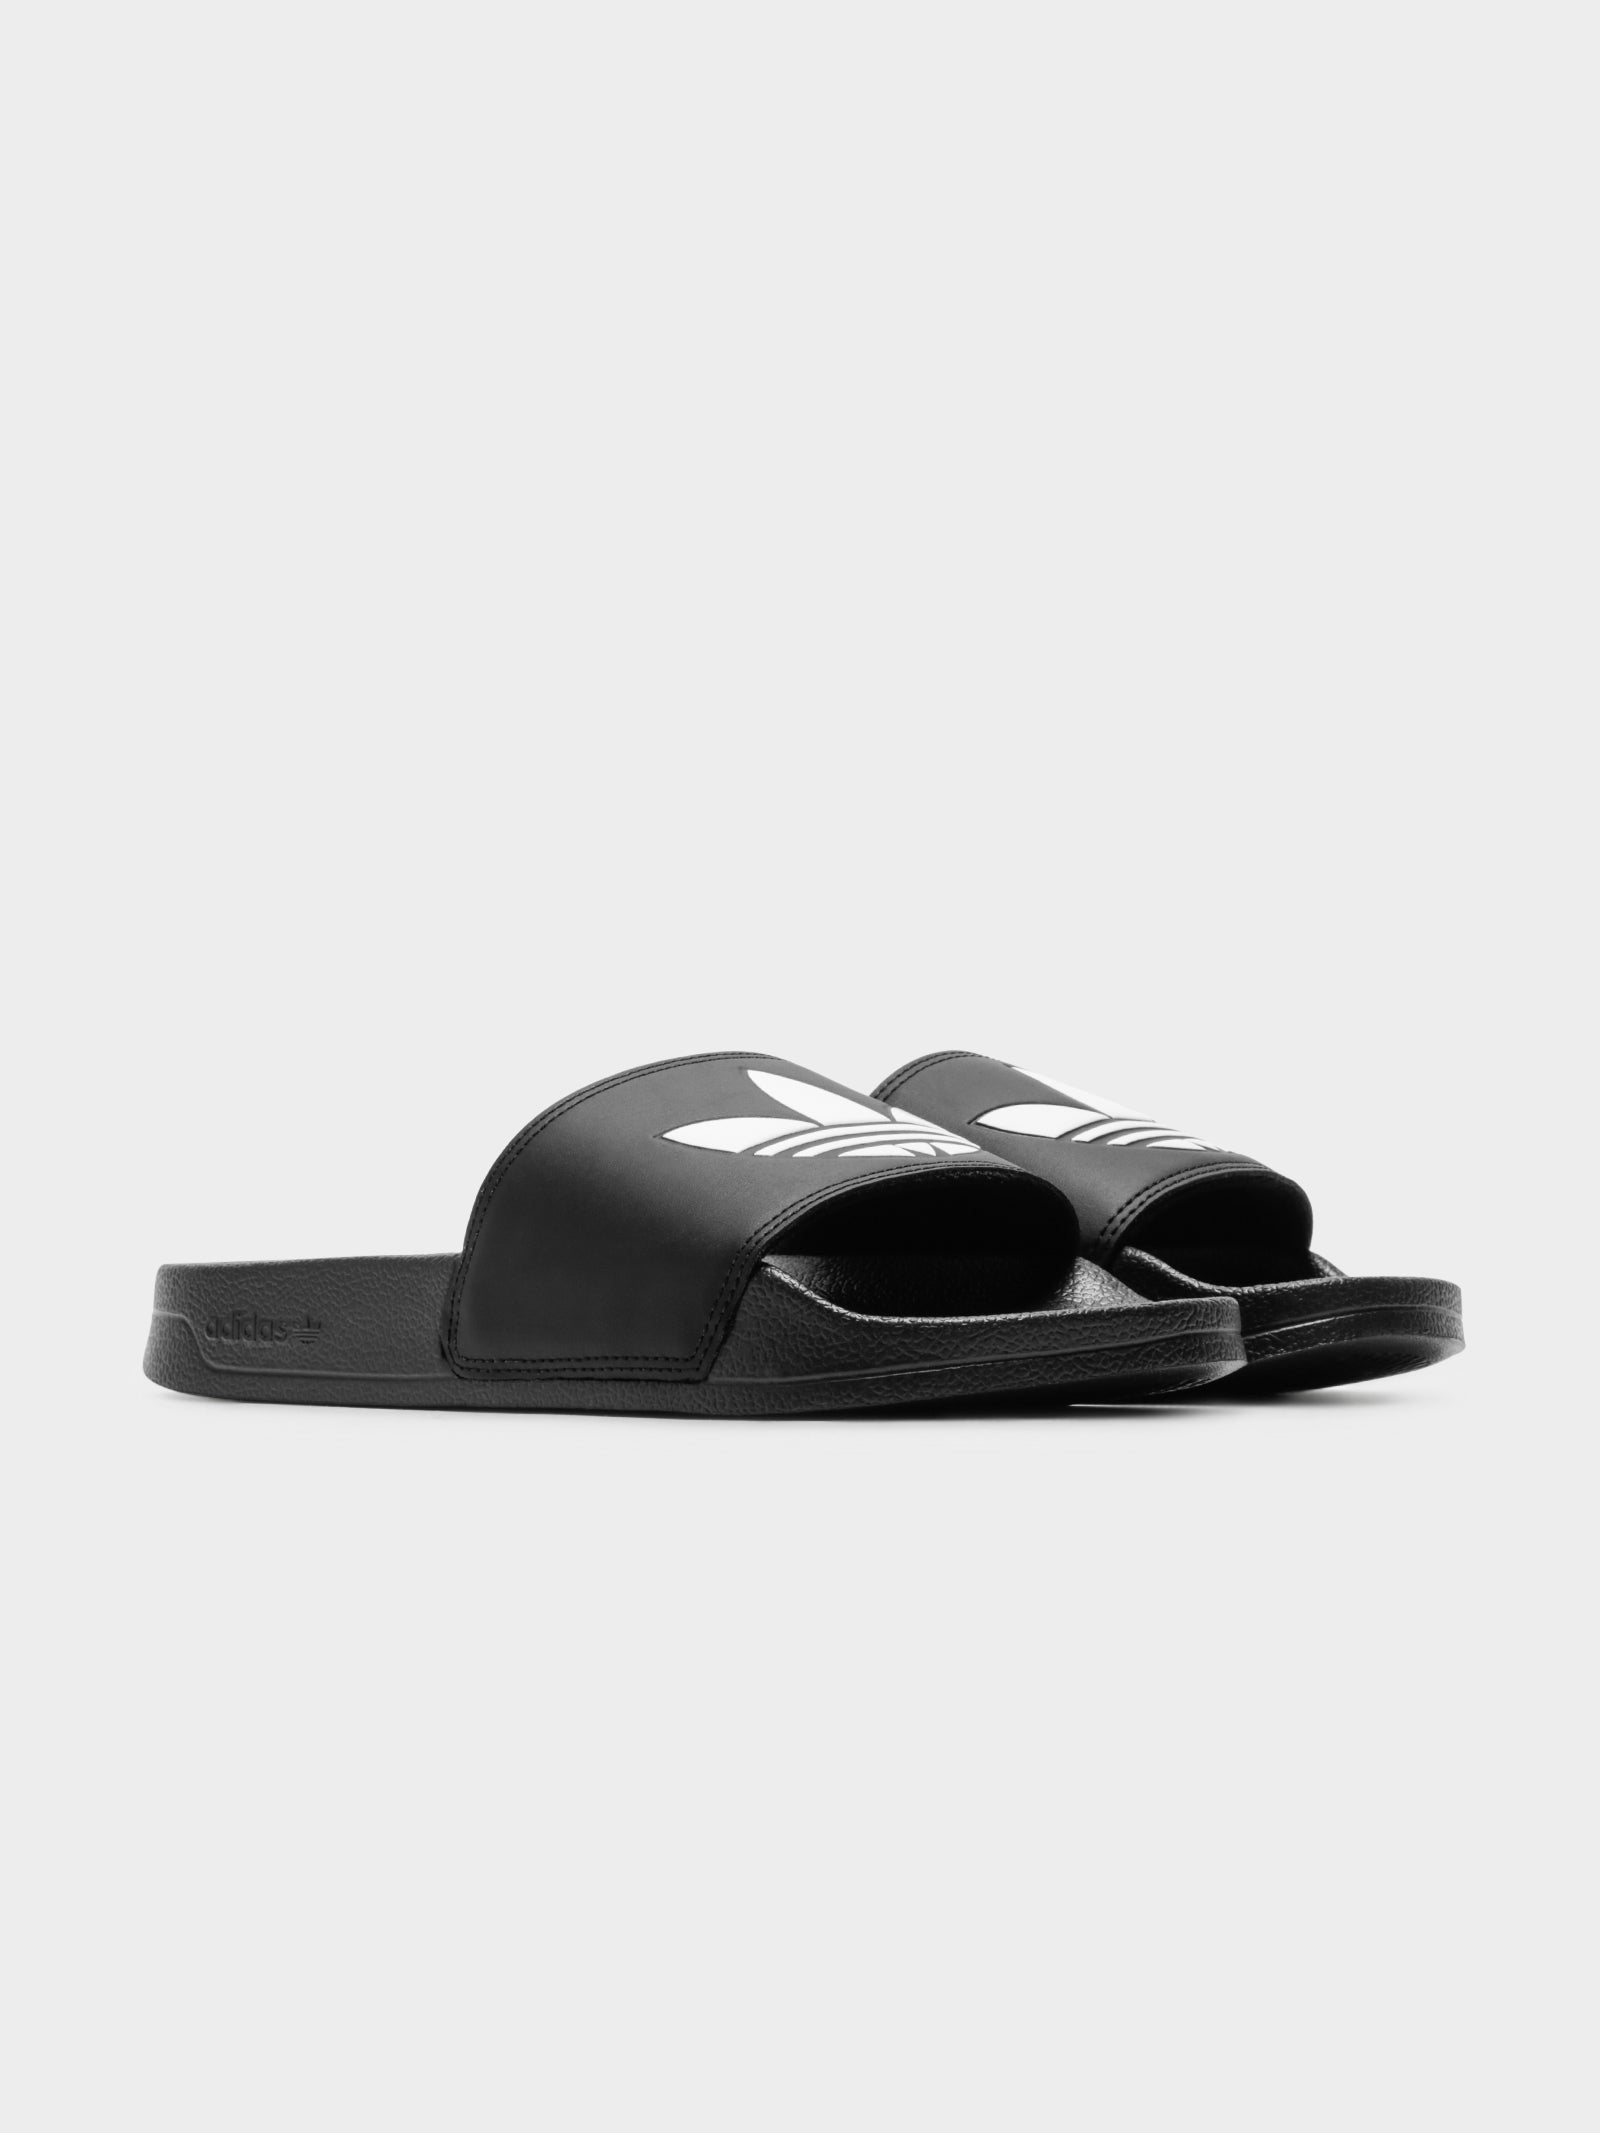 Unisex Adilette Lite Slides in Black & White